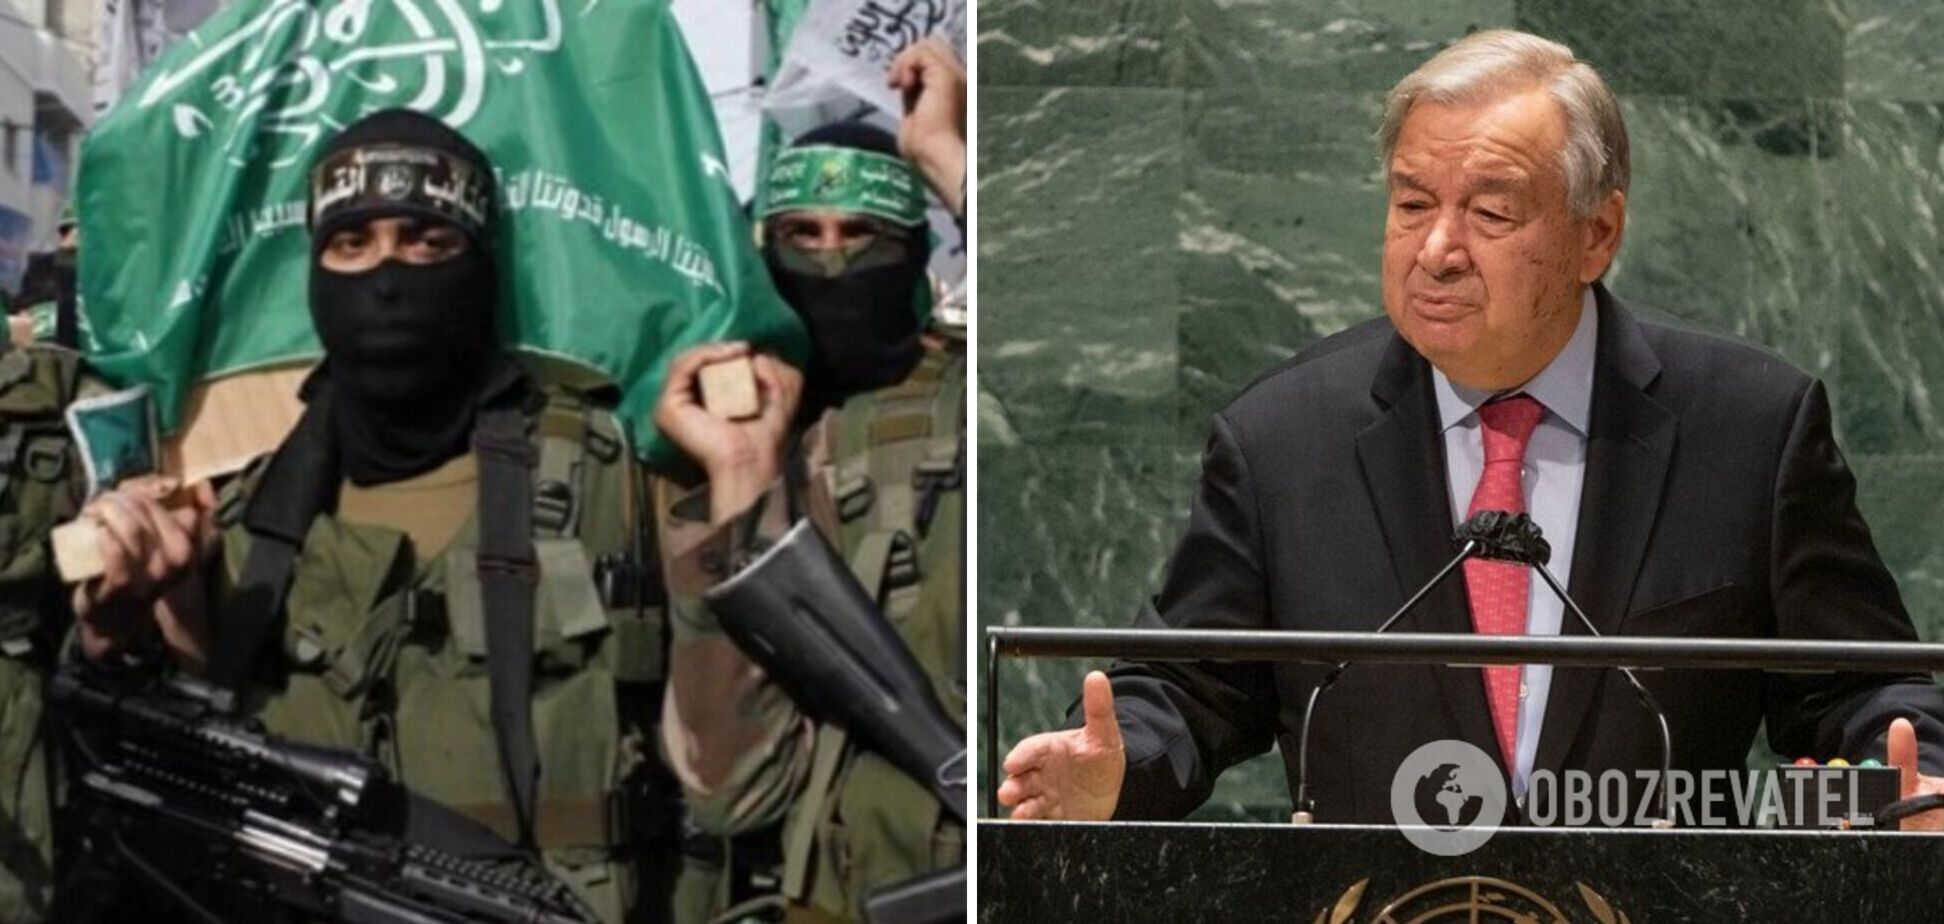 'Я шокирован': генсек ООН отверг обвинения Израиля в оправдании действий ХАМАС